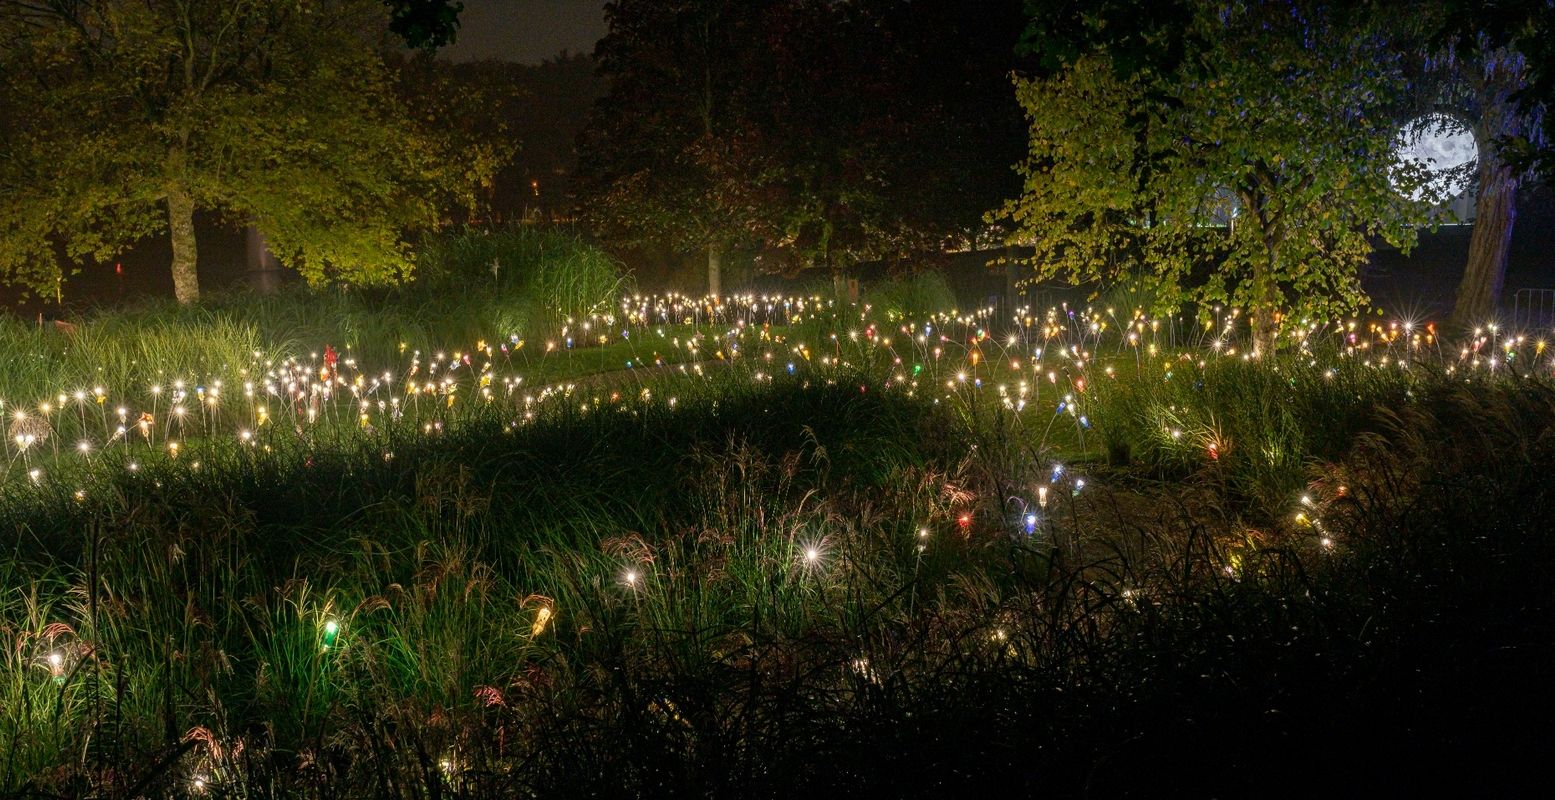 Licht, schaduw, klanken en muziek nemen je mee door betoverende tuinen bij Kasteeltuinen Arcen. Foto: Kasteeltuinen Arcen